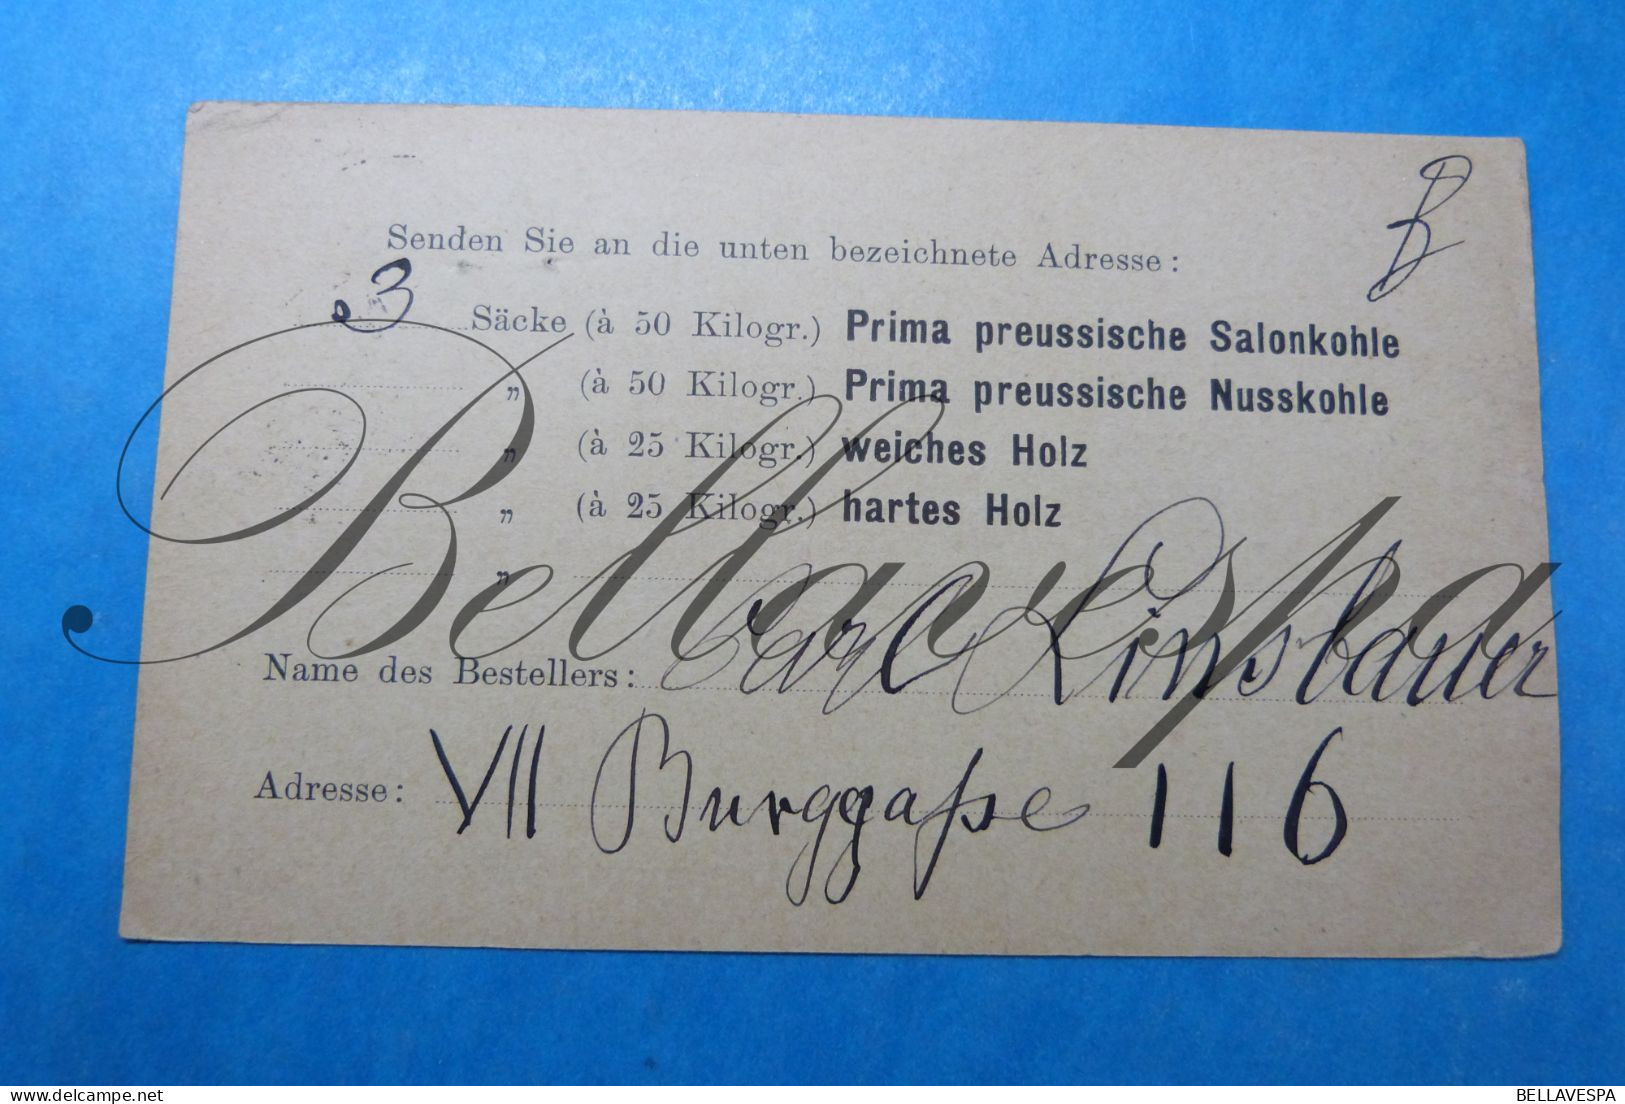 Post Card Bernardgasse""1889""  A.SCHENCK Kohlen Agentie Wien Befehl Commande  Carl Linsbauer VII Bringgafse 116 - Mines